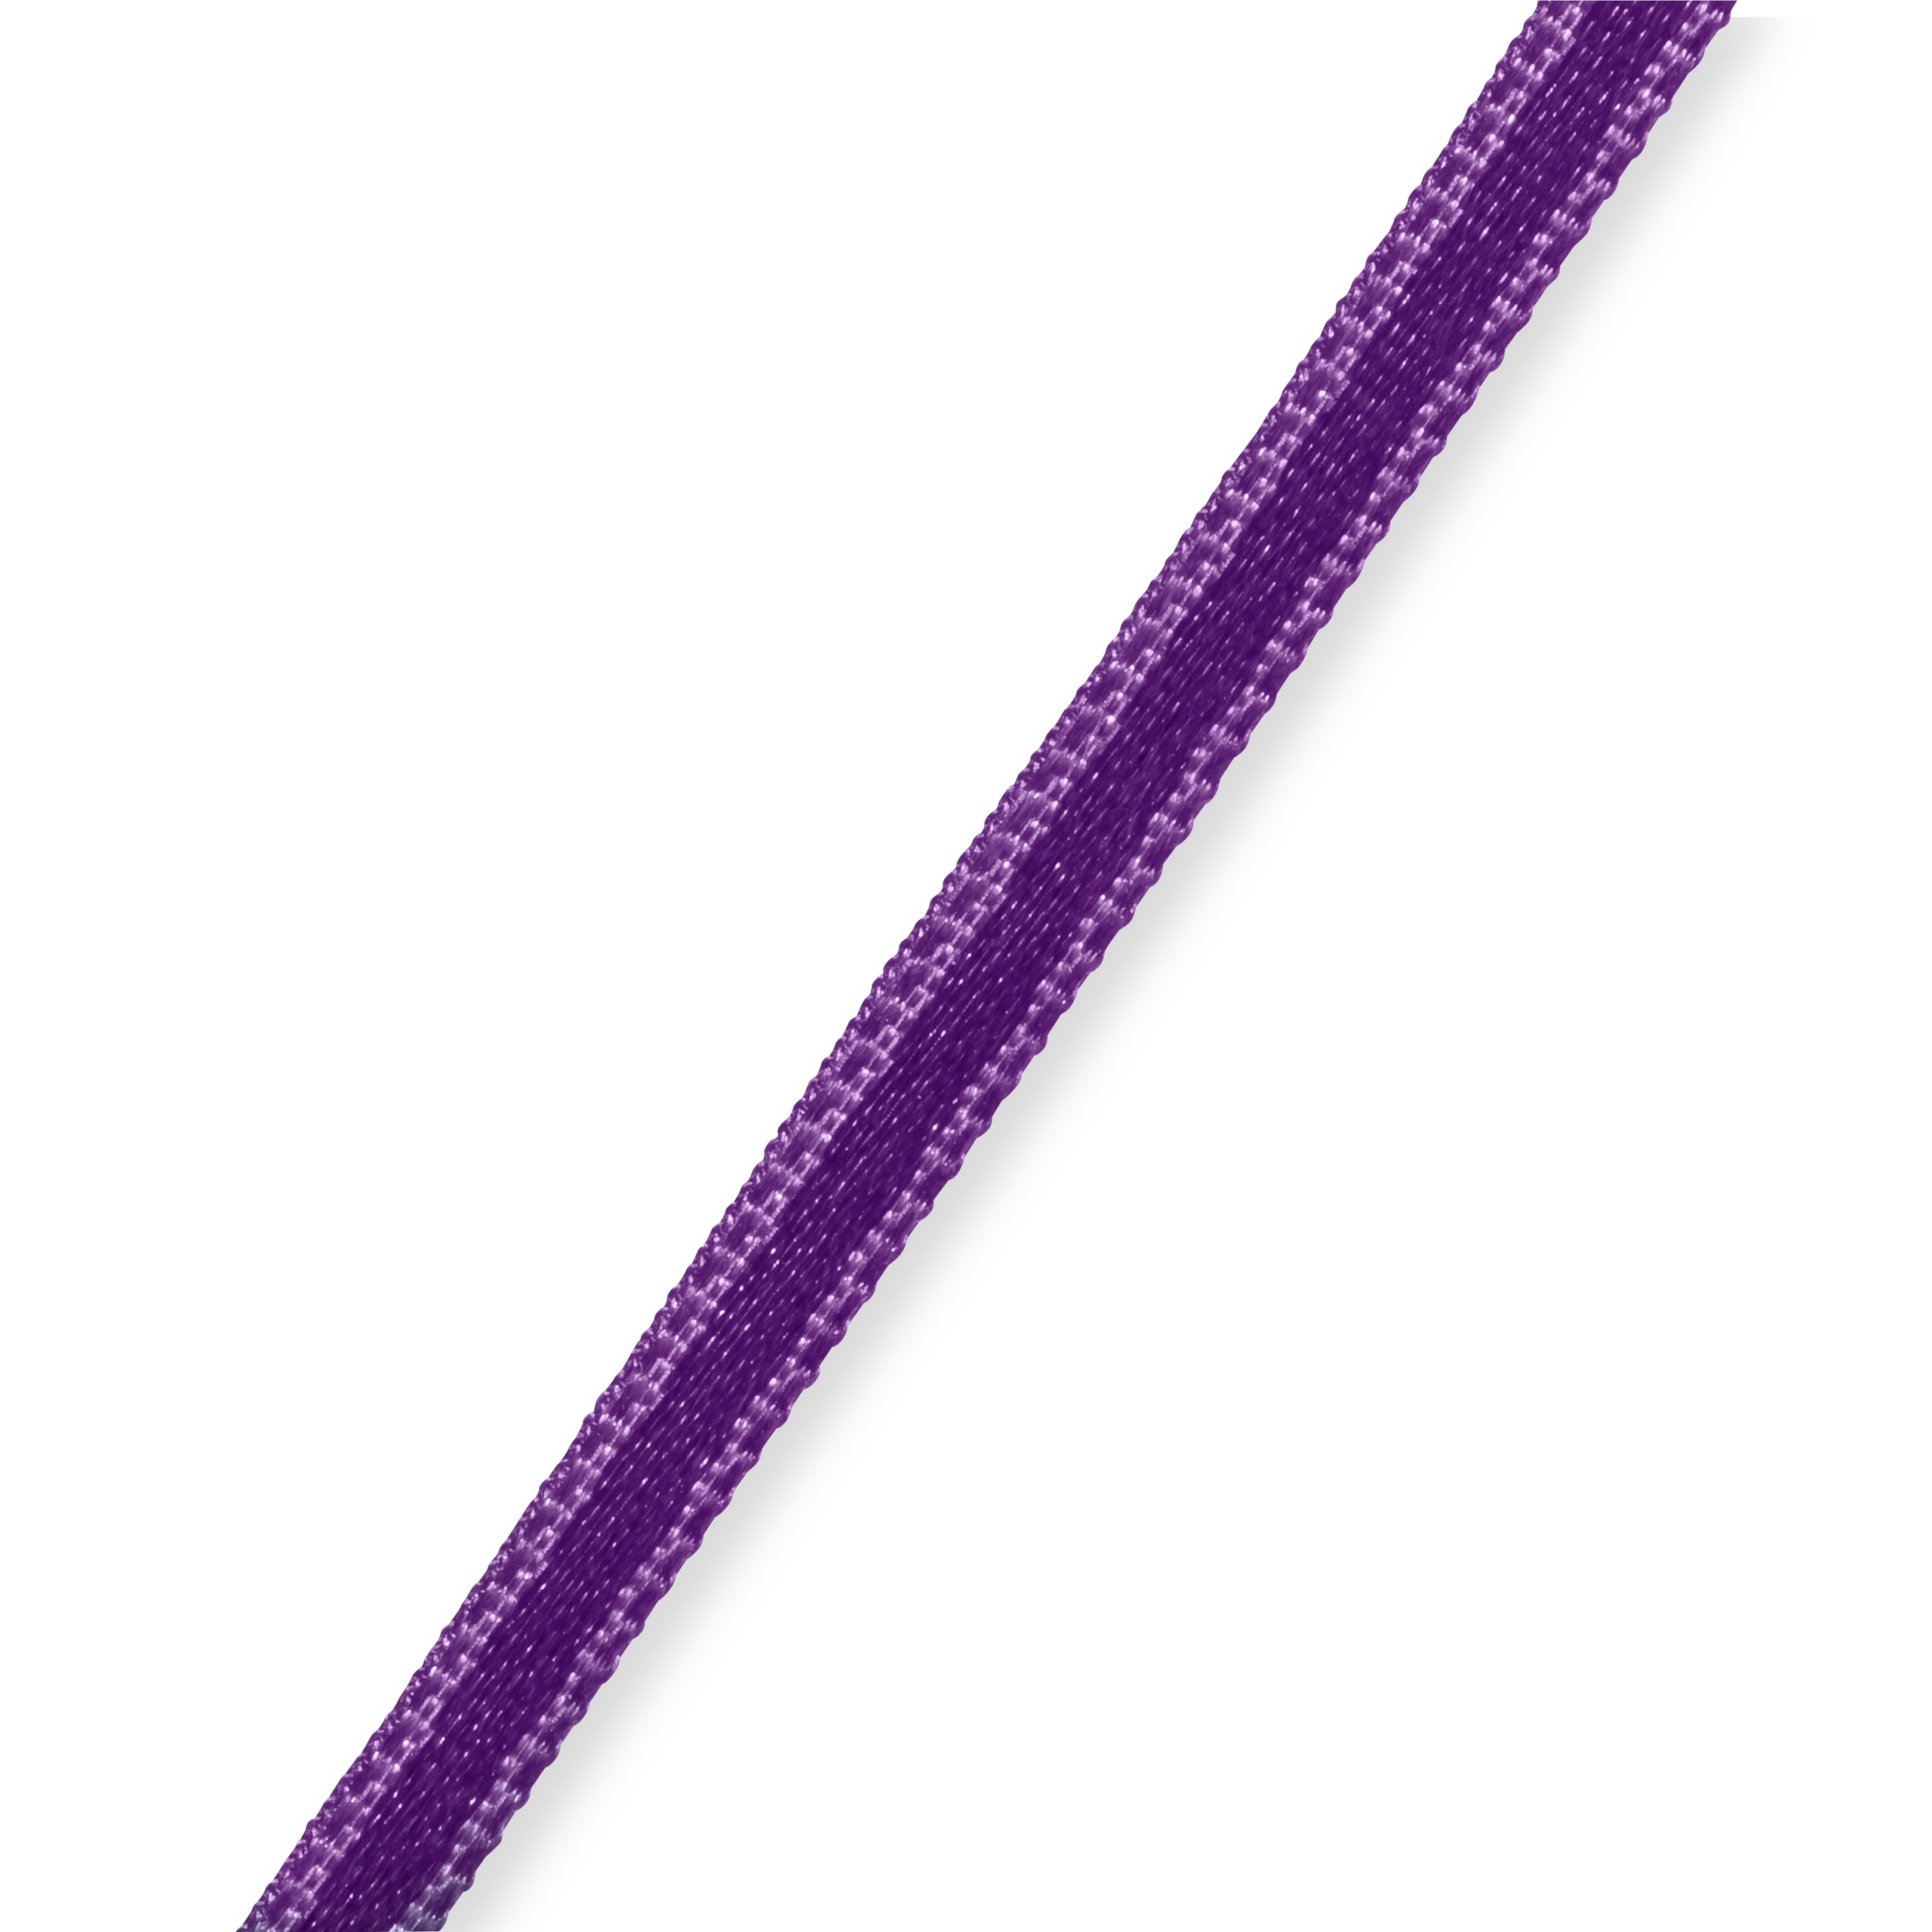 Satin ribbon 3 mm purple, 50 m